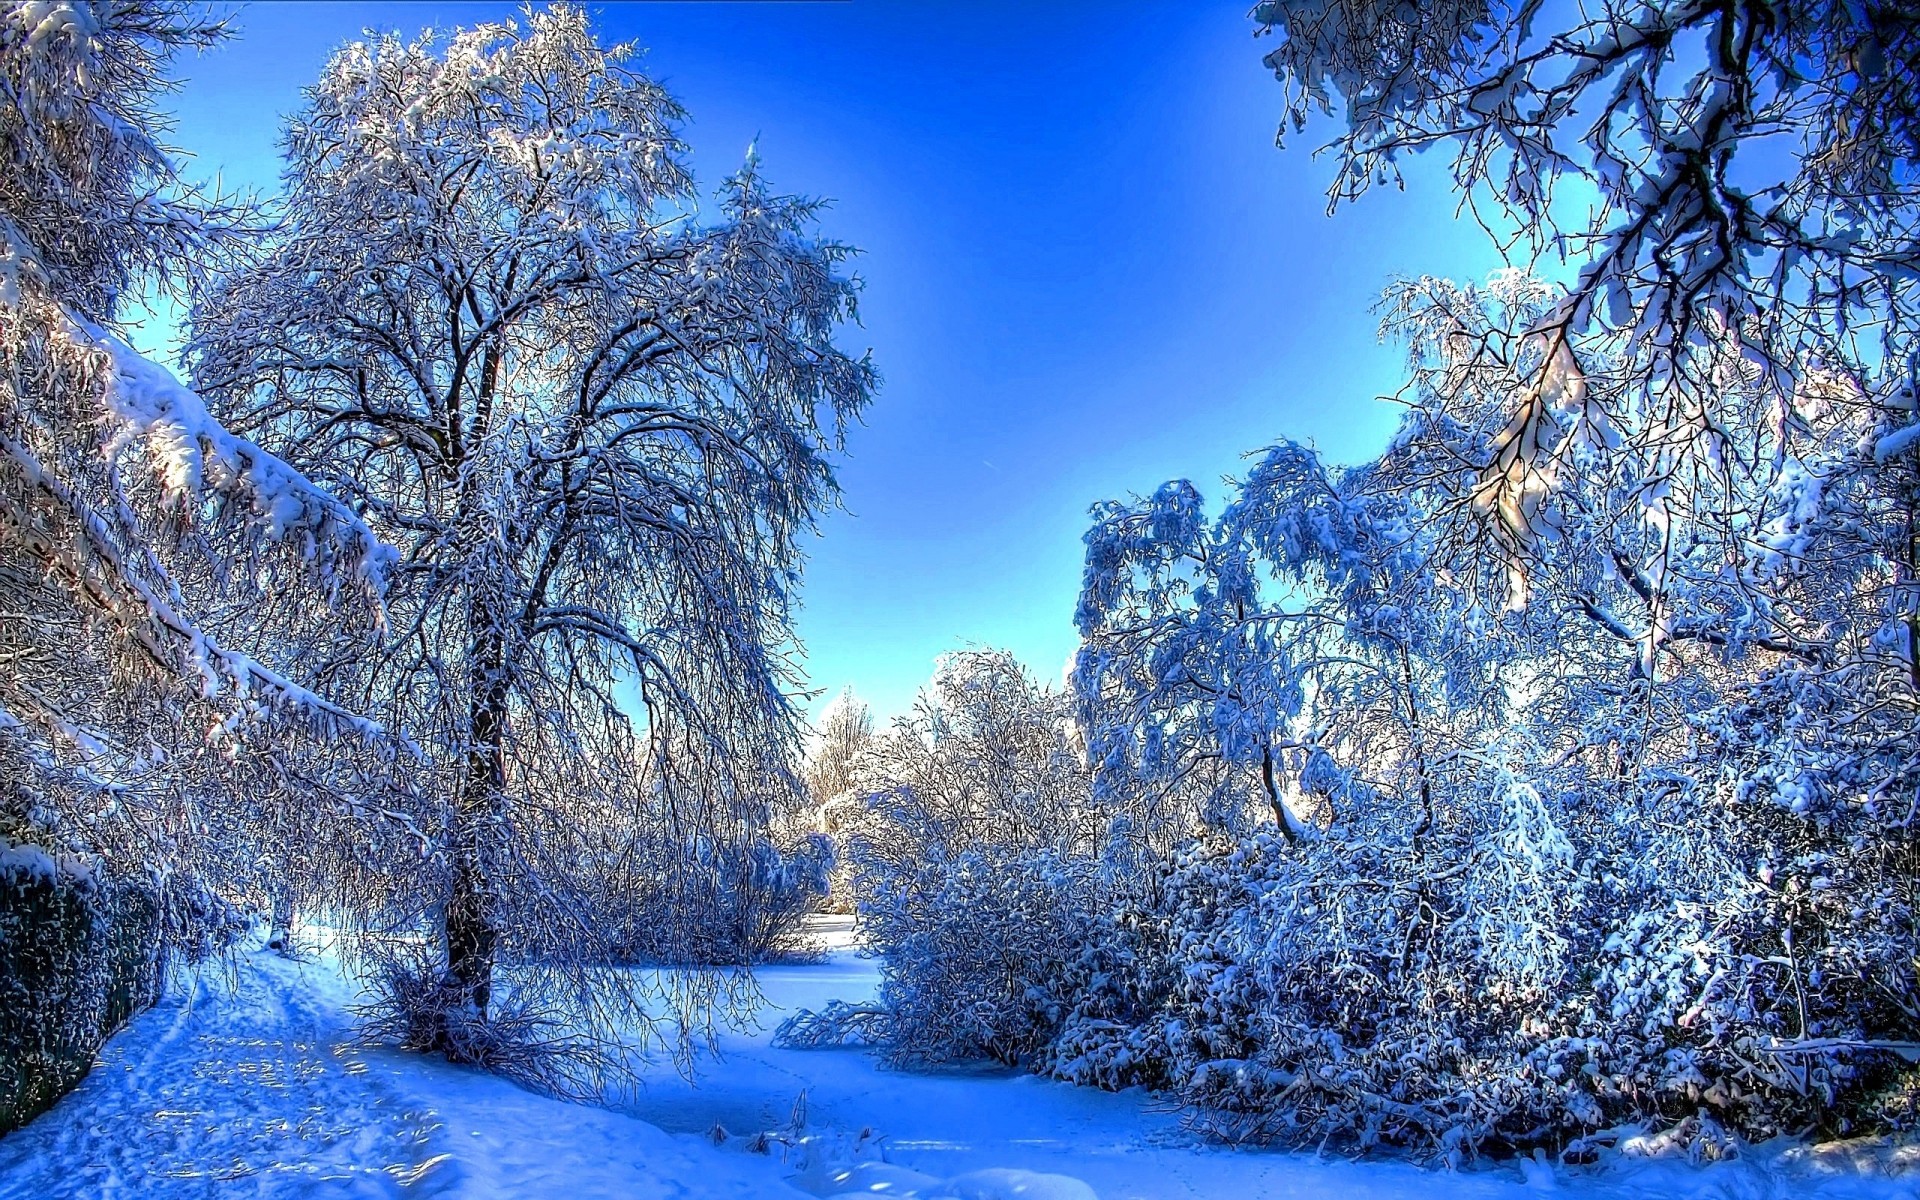 пейзажи зима снег дерево мороз холодная сезон пейзаж древесины замороженные природа филиал живописный лед морозный пейзажи снег-белый сцена рассвет погода ледяной фон замороженные деревья